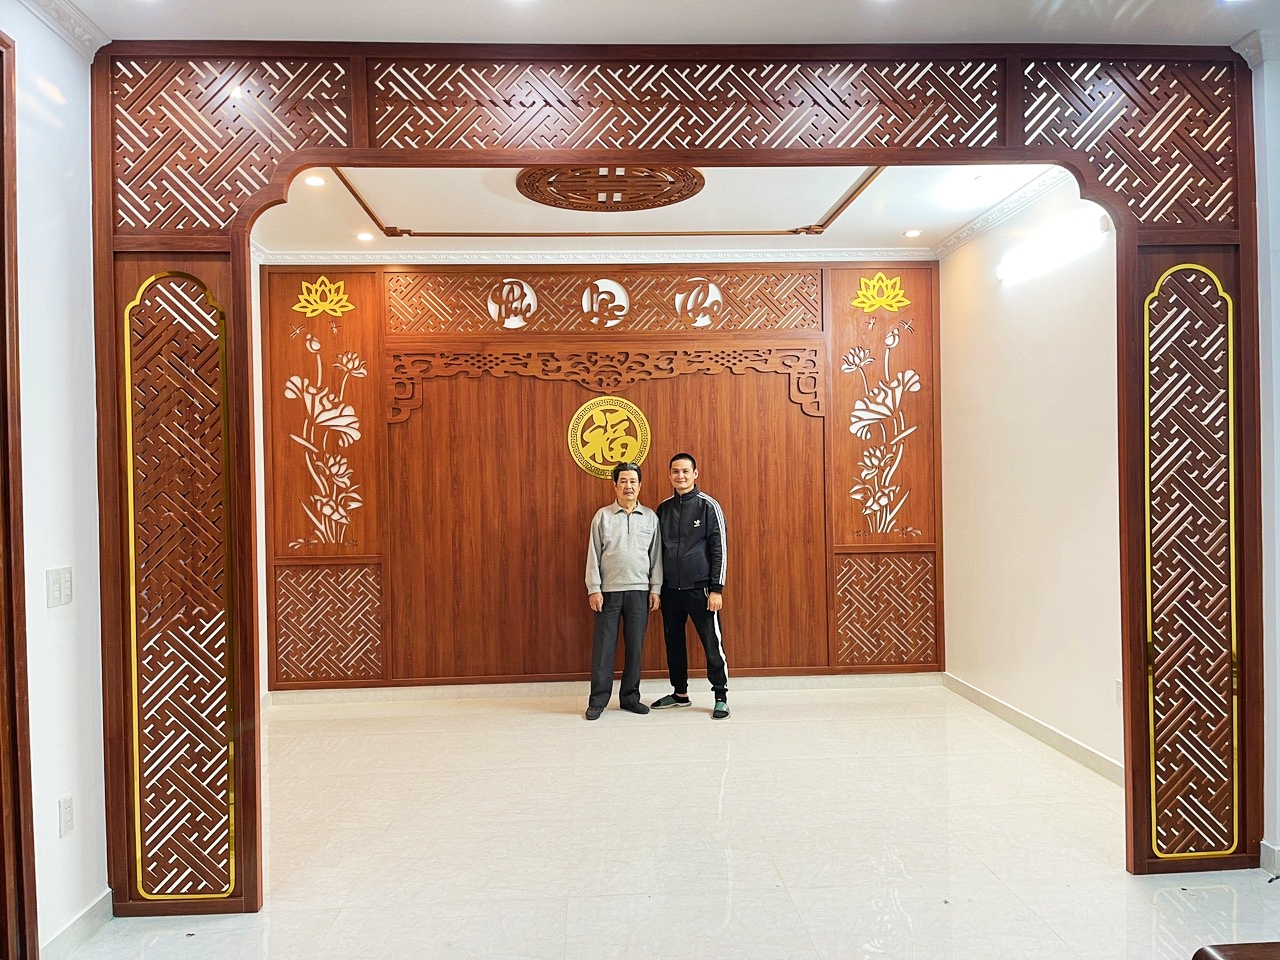 Làm vách trang trí phòng thờ rẻ đẹp tại Uông Bí - Quảng Ninh